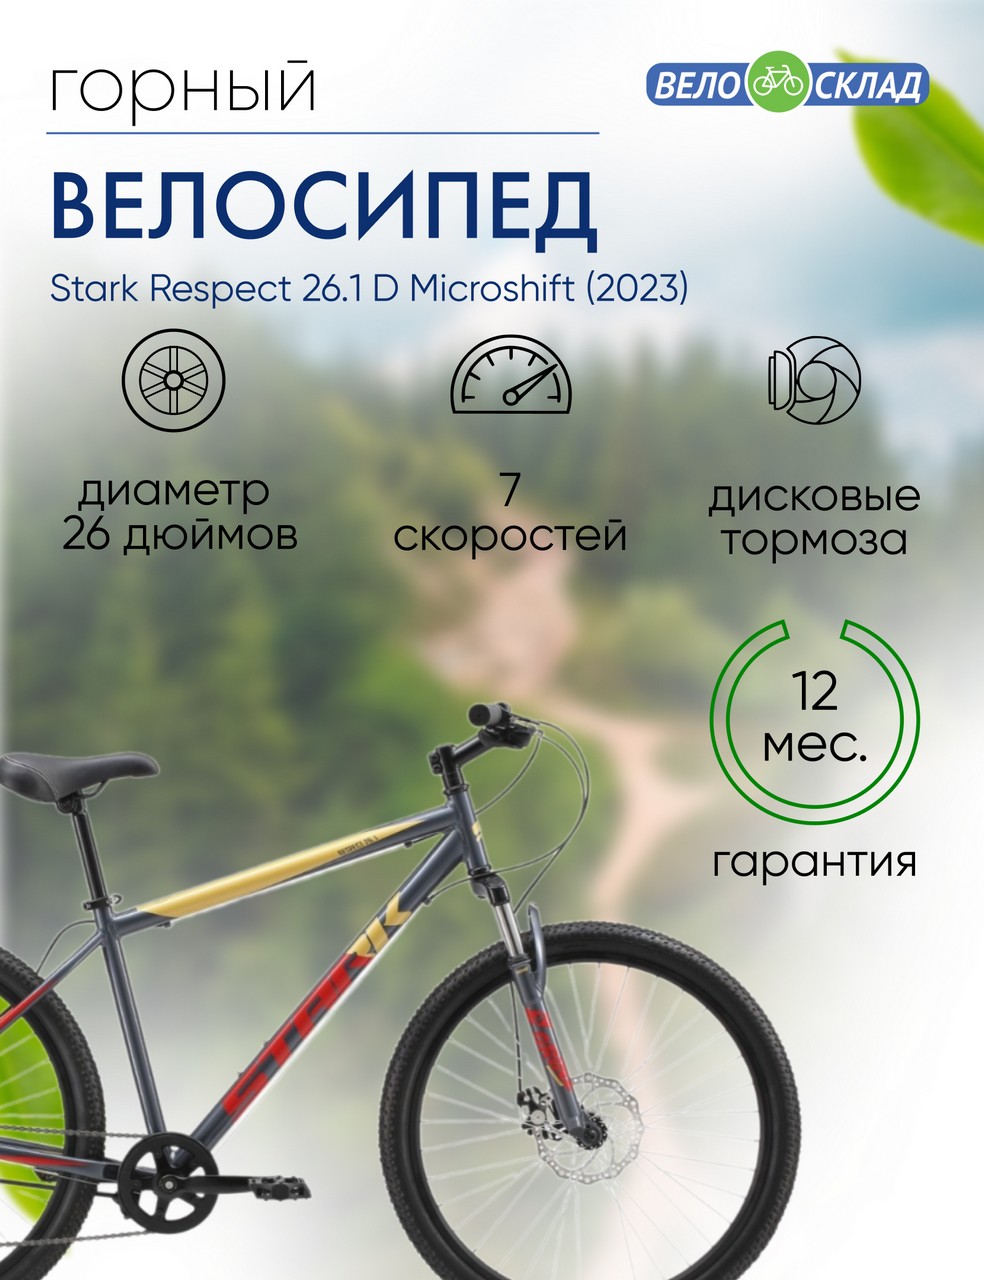 Горный велосипед Stark Respect 26.1 D Microshift, год 2023, цвет Серебристый-Красный, ростовка 20